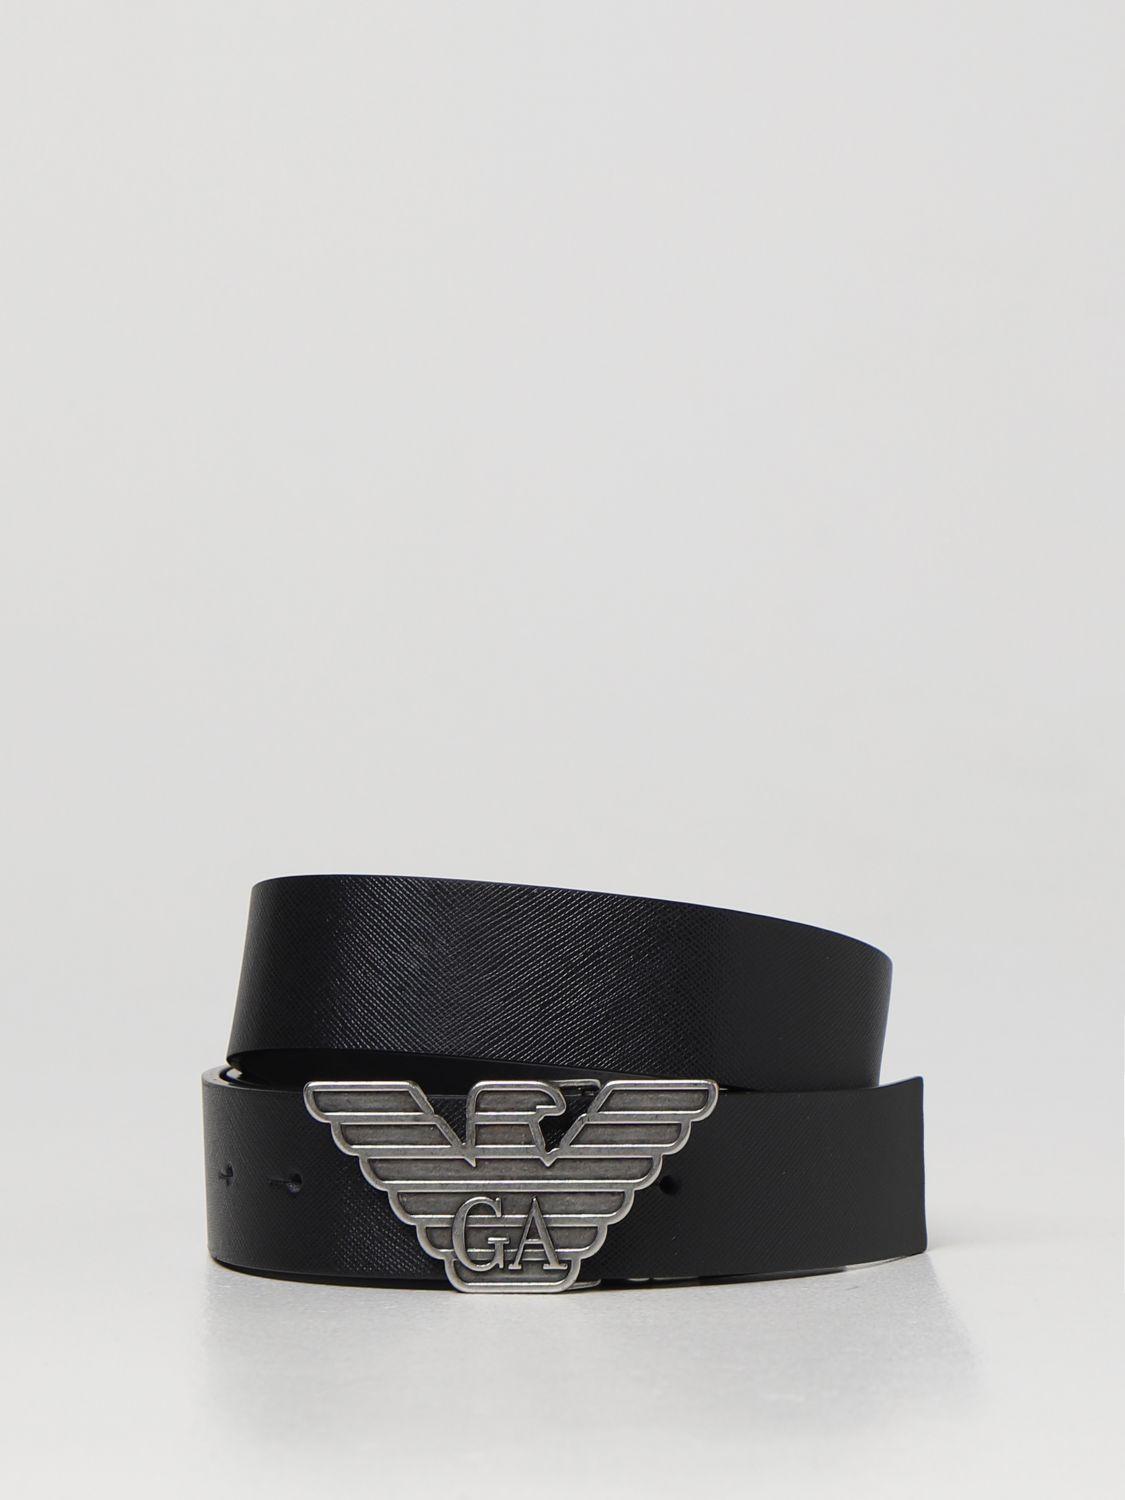 Cinturón con logo en relieve Emporio Armani de Cuero de color Negro para hombre Hombre Accesorios de Cinturones de 